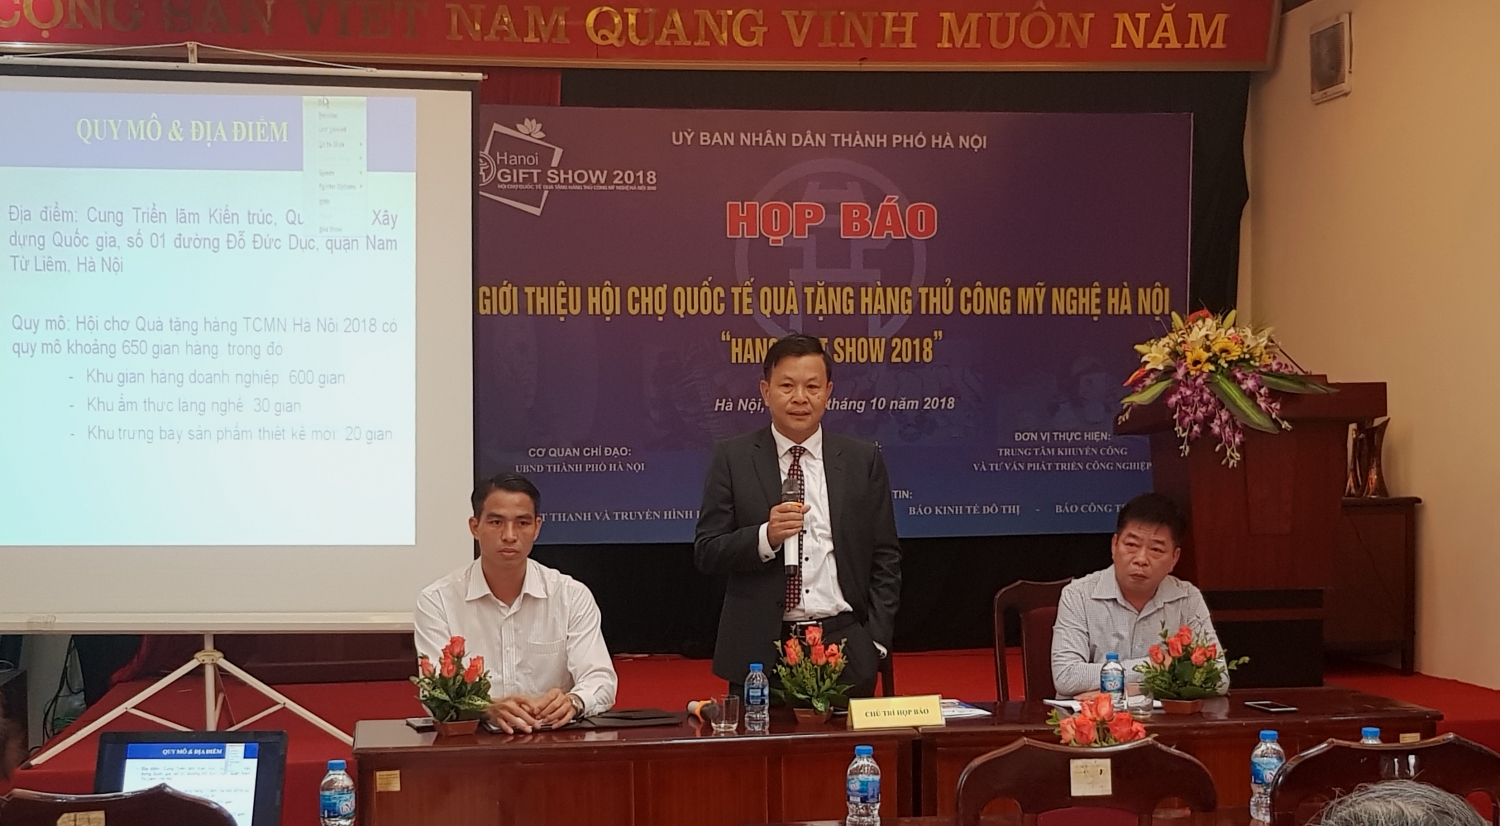 gan 250 doanh nghiep tham gia hoi cho hanoi gift show 2018